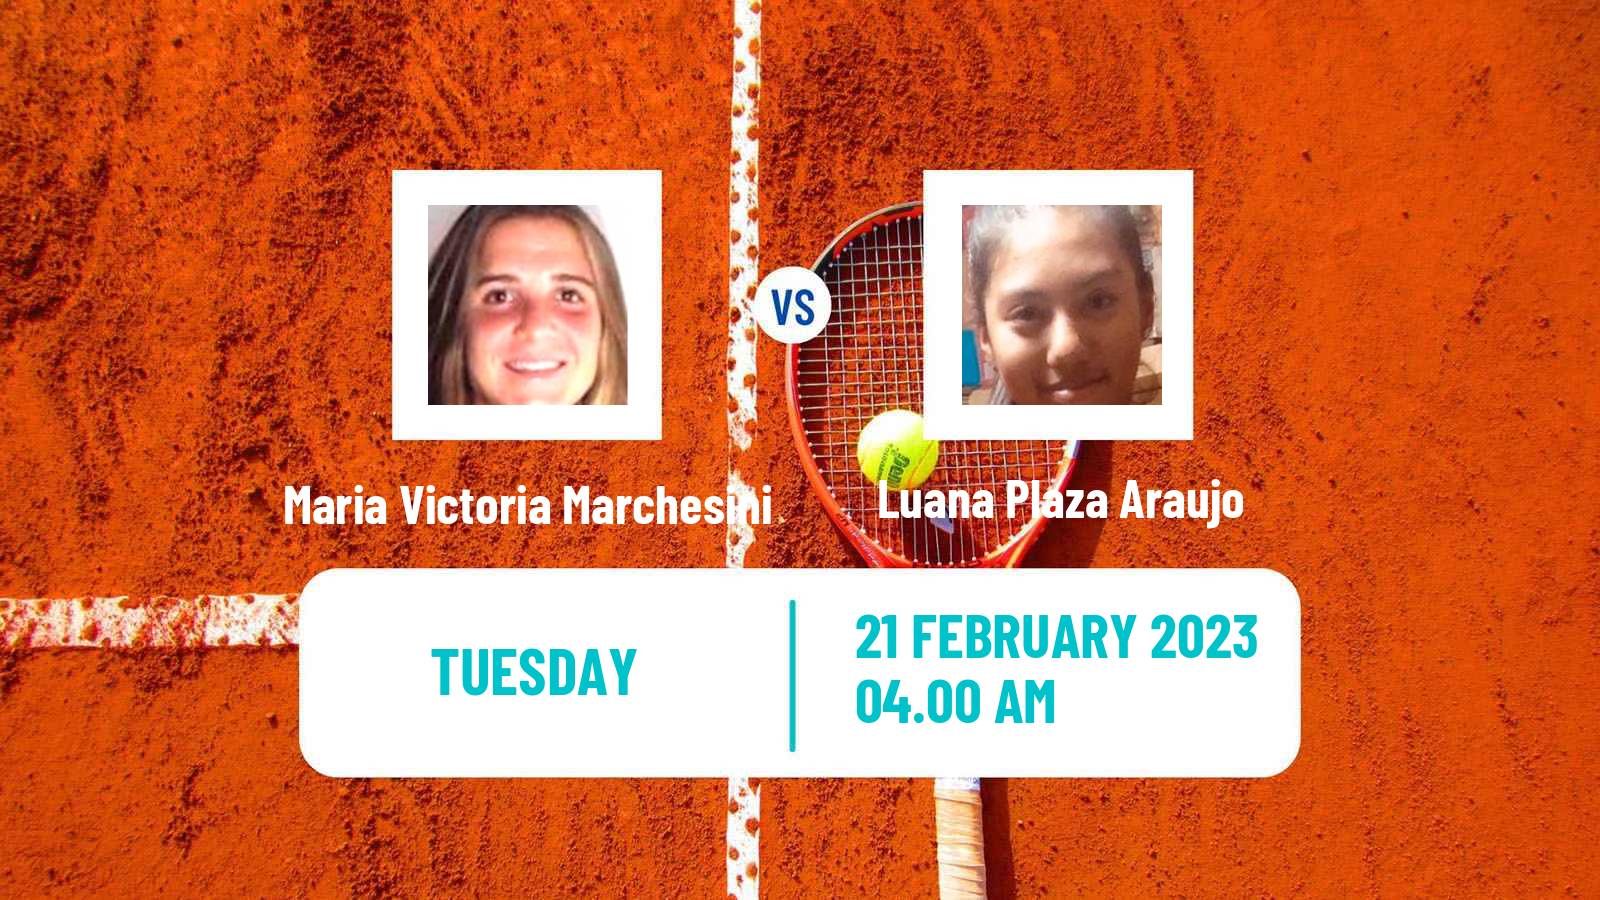 Tennis ITF Tournaments Maria Victoria Marchesini - Luana Plaza Araujo